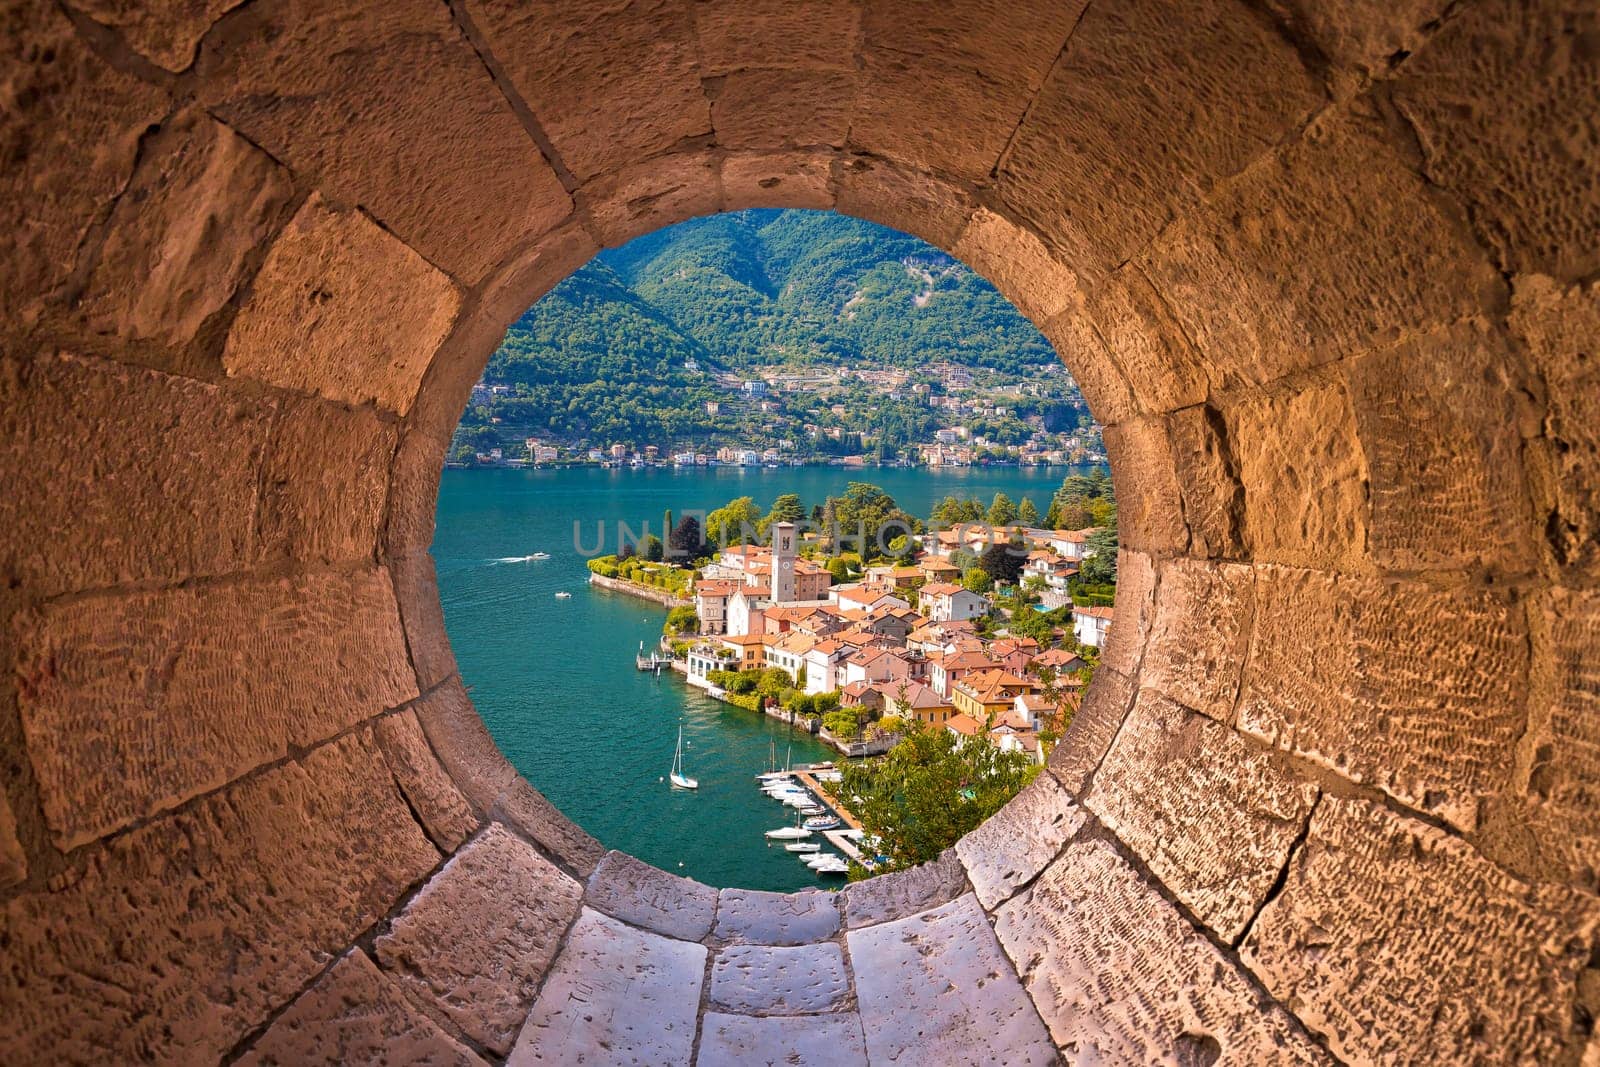 Idyllic town of Torno on Como lake view through stone window by xbrchx